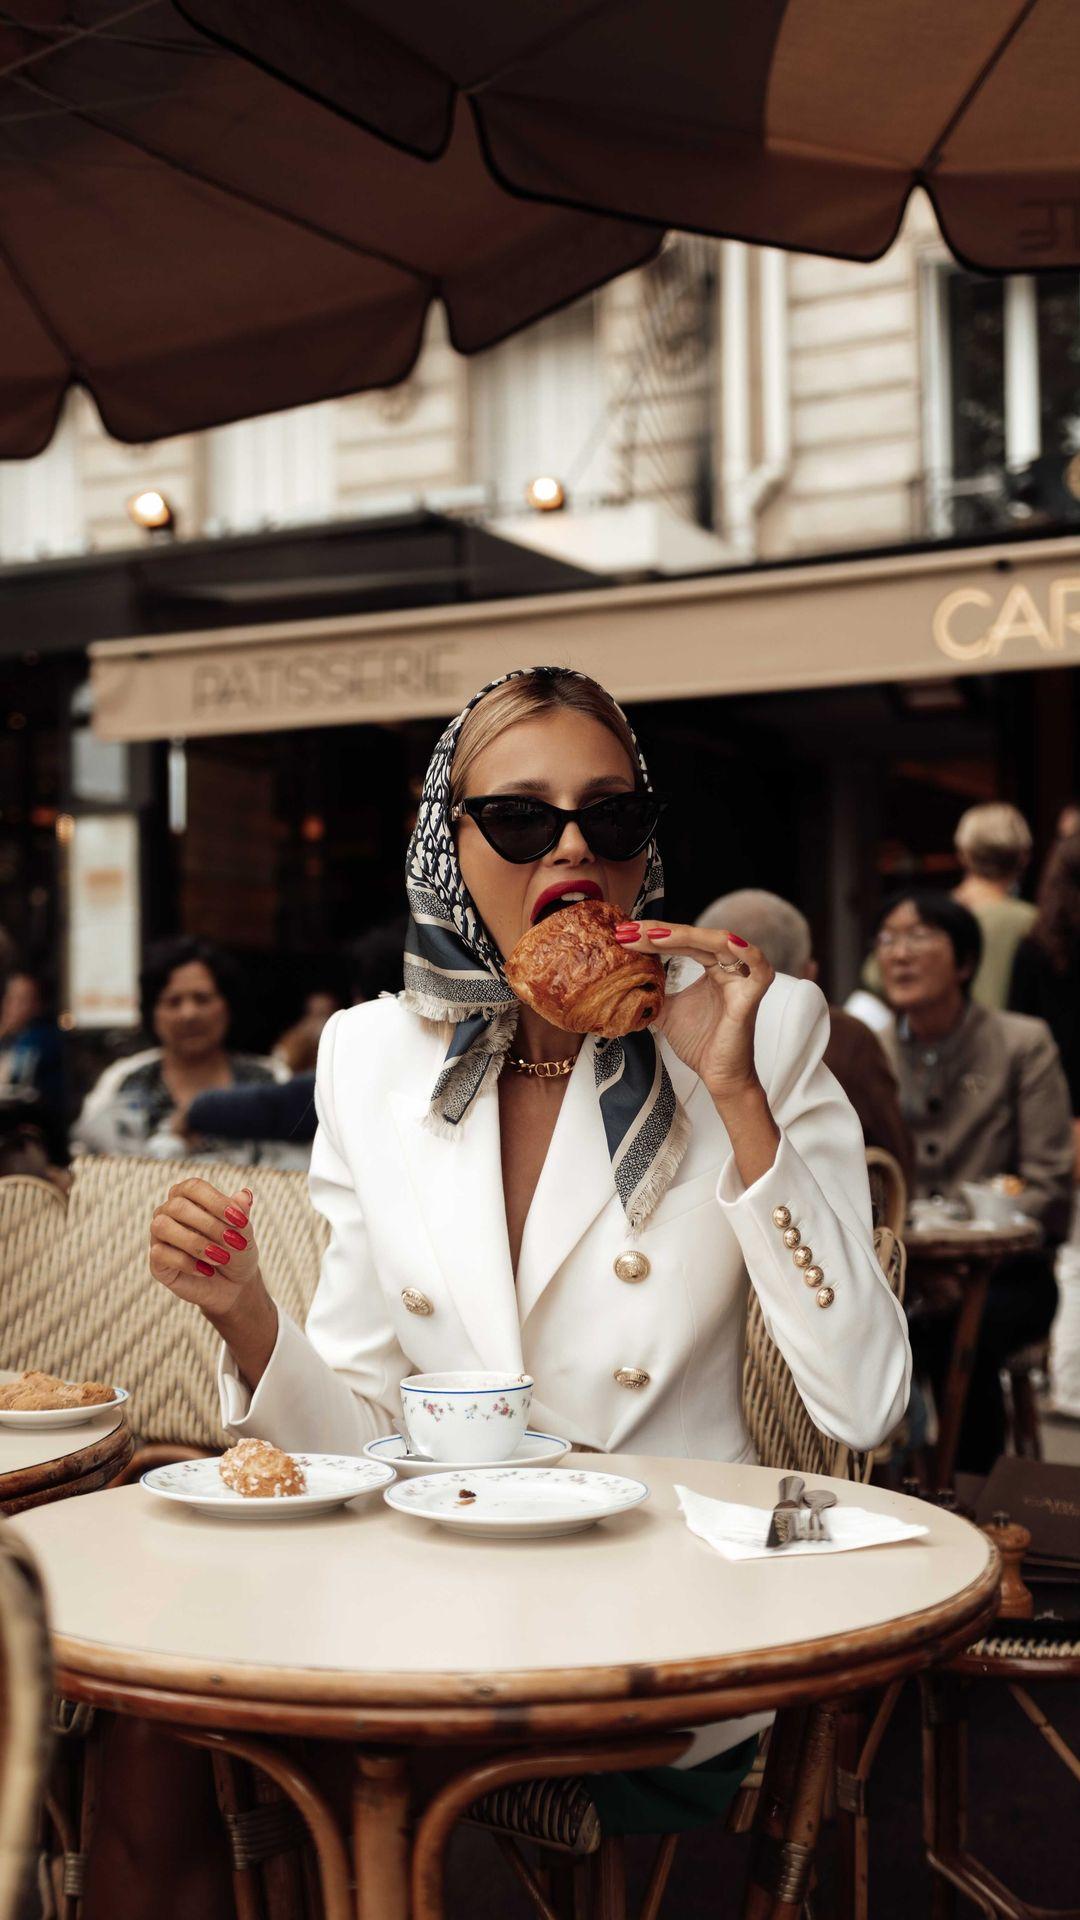 class="content__text"
 Taigi taigi.. Paris restoranų sąrašas pagal mane 🤭 

• La Rotonde de la muette - labai skanus maistas, ne tokia turistinė vieta, galbūt labiau pasijaus french vibe - man labai patiko! :) 

• Soon grill champs-elysees-korėjiečių restoranas, kuriame galit gauti experience, kaip ant stalo prie akių grill’inamą maistą. 

• Girafe Paris - restoranas su nerealiu vaizdu į Eifelio bokštą! Reikia iš anksti rezervuot. Puikus special progai atskridus į Paris ką nors atšvęsti. 

• Carette - legendinė boulangerie/restoranas, kuris garsėja savo geriausiu scramble eggs mieste. Turi man skaniausią Pain au chocolat ir chouquettes. Čia pigiai nebus, bet jų kepiniai next level. 

•Cafe de Flore - ikoniška instagramerių vieta, kurią matot kaip tokią vat grynai french vibe kavinę. Kažkam gali pasirodyti overpriced, kažkam viskas ko norisi Paryžiuje popiečio užkandžiams. Bet club sandwich tikrai nenuvylė. 

•Bambou Paris - tailandietiškas restoranas. Skanus maistas, gražus interjeras. 

• DC Cafe - paprastai, skanus sveikuoliškas maistas, salotos. Geras tuno beigelis,smoothies. 

• Rimal - nerealiai skanus Libaniečių restoranas. 

• Coco Paris - special progai. Maistas tobulas, aptarnavimas puikus. Vieta graži. Mes buvome ketvirtadienį tai grojo gyva grupė, siūlyčiau pasiteirauti ir eiti kada jie bus. Nereali lokacija prie Opera Garnier pasivaikščiot po vakarienės.
 
• Le Belloy - skani pica ir bulvytės Fri :) 

•Bon Rue de la Pompe - geras azijiečių restoranas, garsus savo interjero detalėmis, kurias kūrė Philippe Starck. 
Rekomenduoju baklažaną!! 

• Diep - vienas geriausių mieste kiniečių restoranų! Nerealus interjeras, maistas ir aptarnavimas. Nerekomenduoju tik kepto banano desertui - be ryšio .) 

• Manko Paris - buvau labai senai, bet kosminė vieta. Nežinau, ar atsidarė po covido. Viršuje yra labai geras restoranas, apačioje klubas su freaky ir cool pasirodymais :) kam reikės tas pasidomės daugiau 🌶

Pabaigai norėčiau pasakyt, kad ten yra dar tiek daaaug įdomių, įvairių vietų ir restoranų, kad kažkada sąrašą papildysiu ❤️ 

Primenu, kad šone yra posto išsisaugojimo mygtukas, kad prireikus rastumėt šį sąrašą! Atskirai pažadu neprimint 😂👌🏻🤪 

Video/foto @kuliusaite 🌶💘 
 